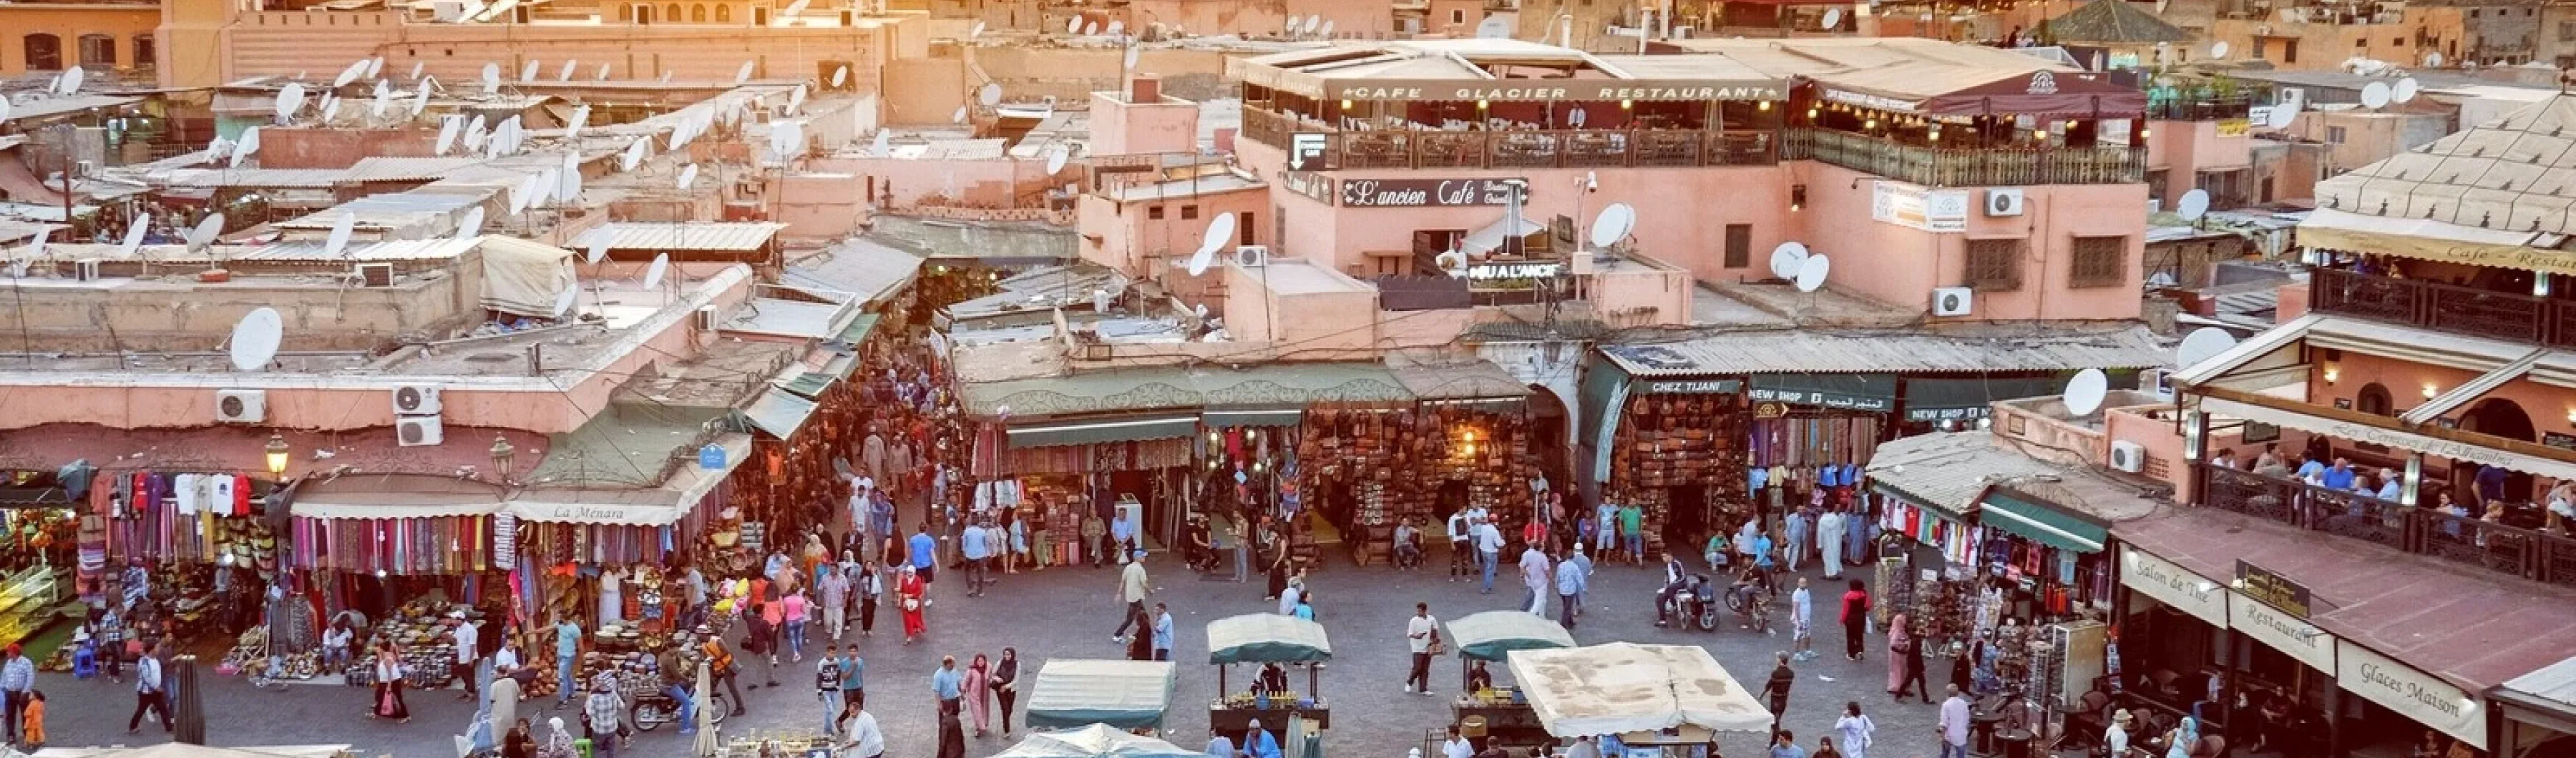 foto keramaian pasar kota yang sibuk saat matahari terbenam